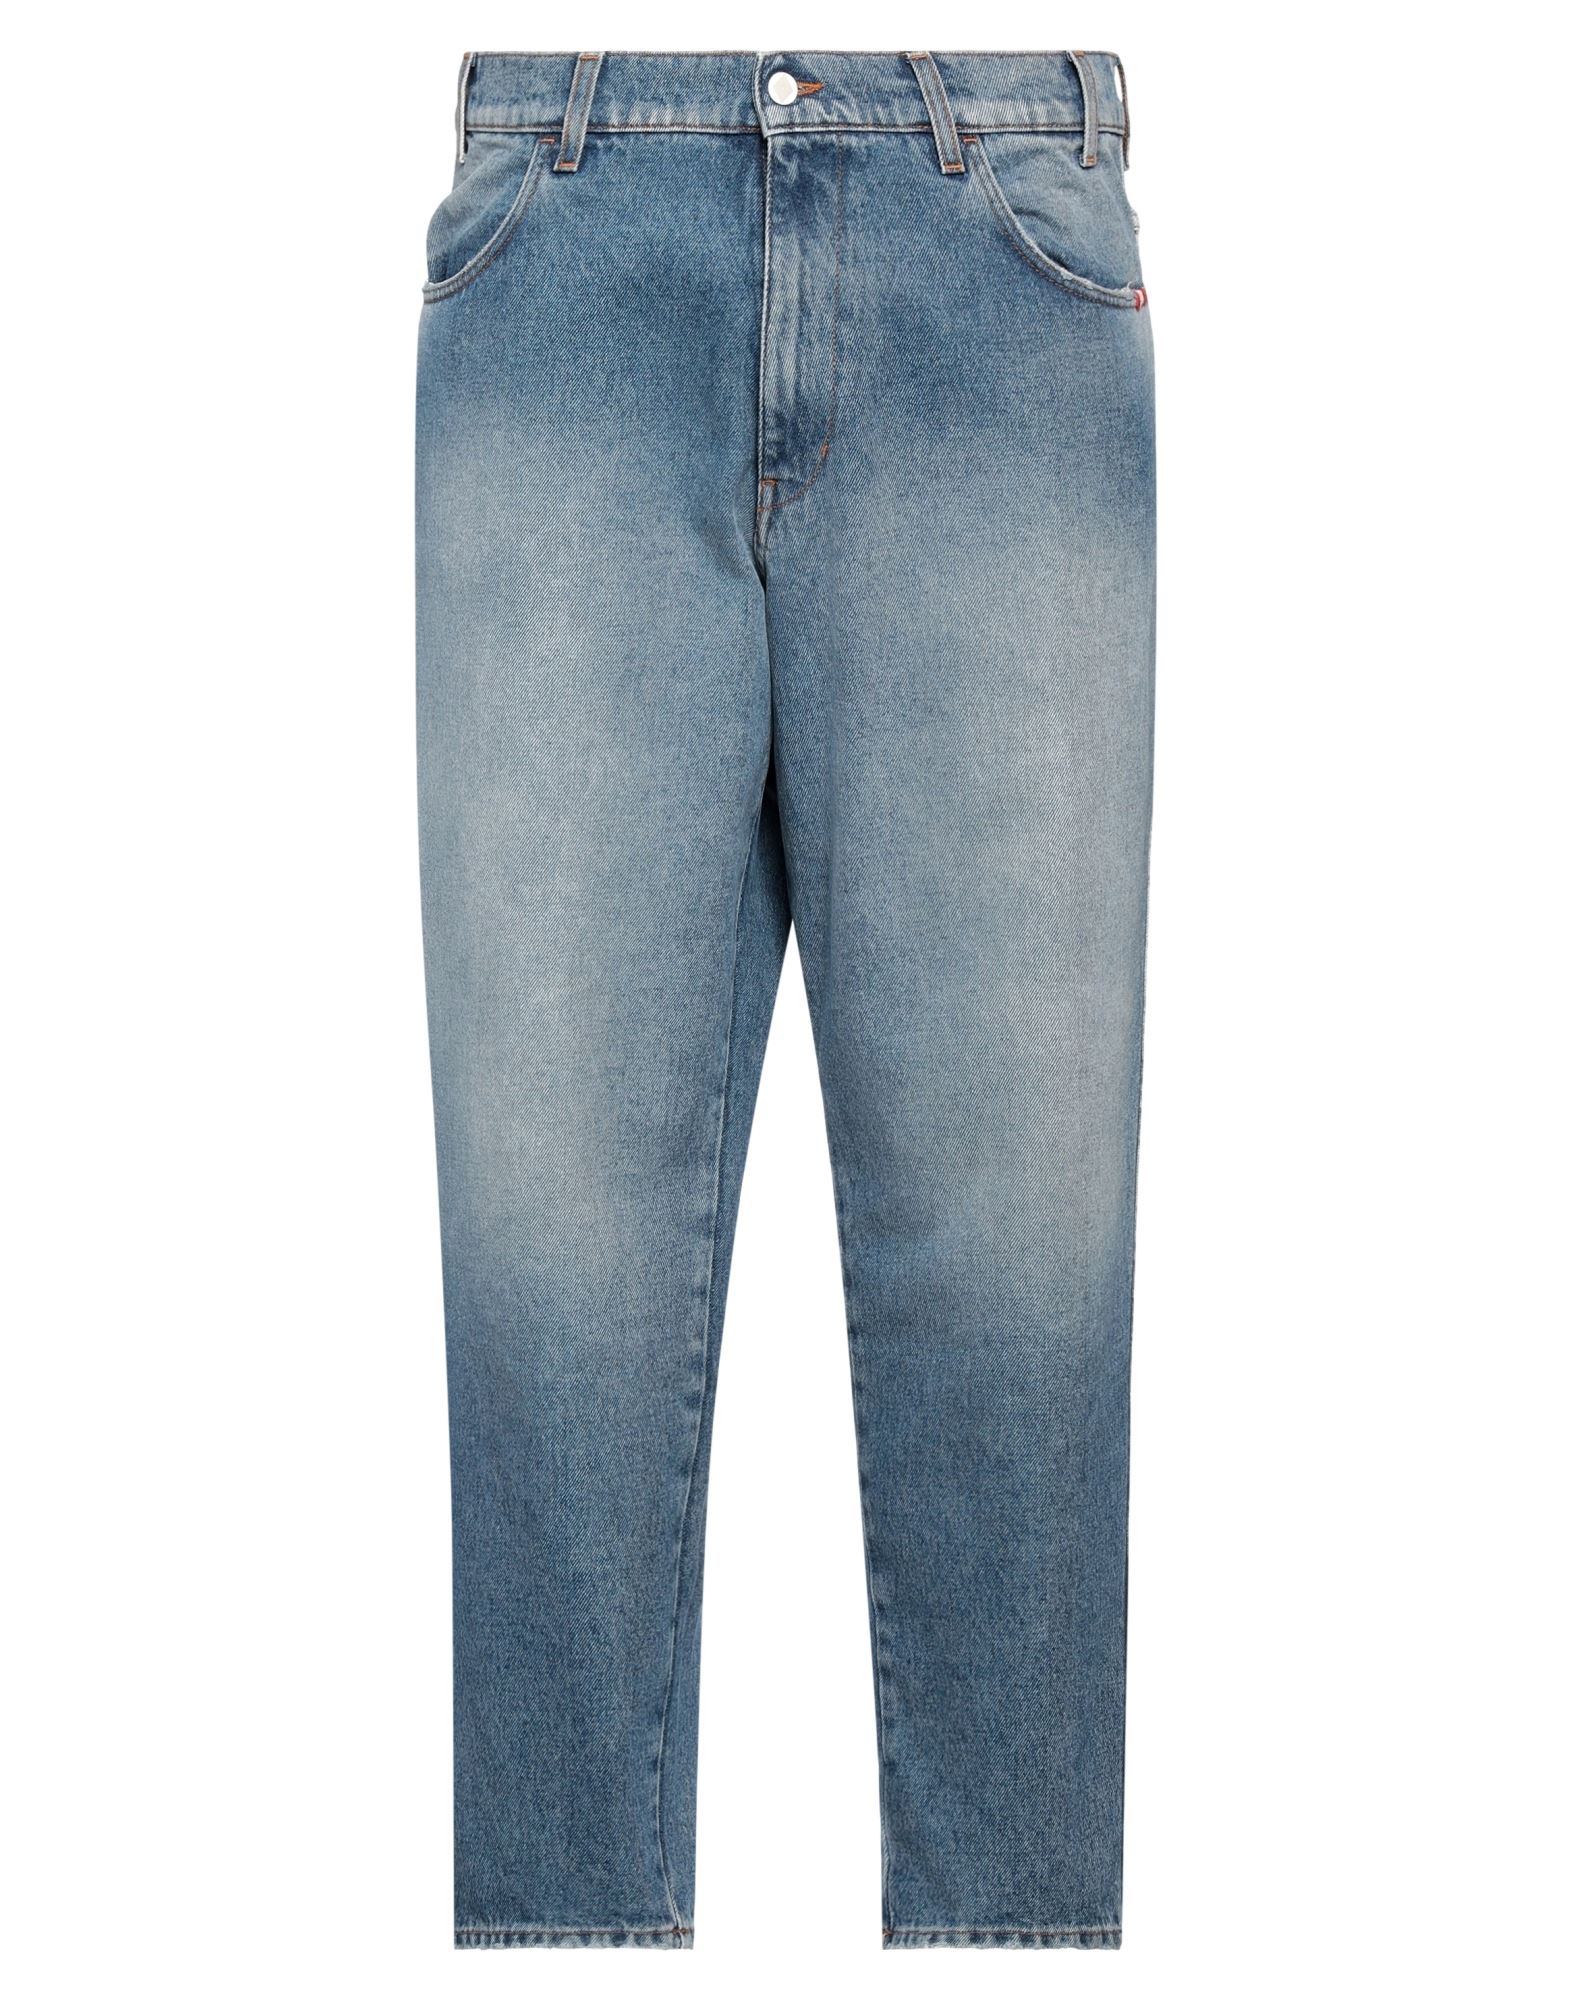 Shop Amish Man Jeans Blue Size 36 Cotton